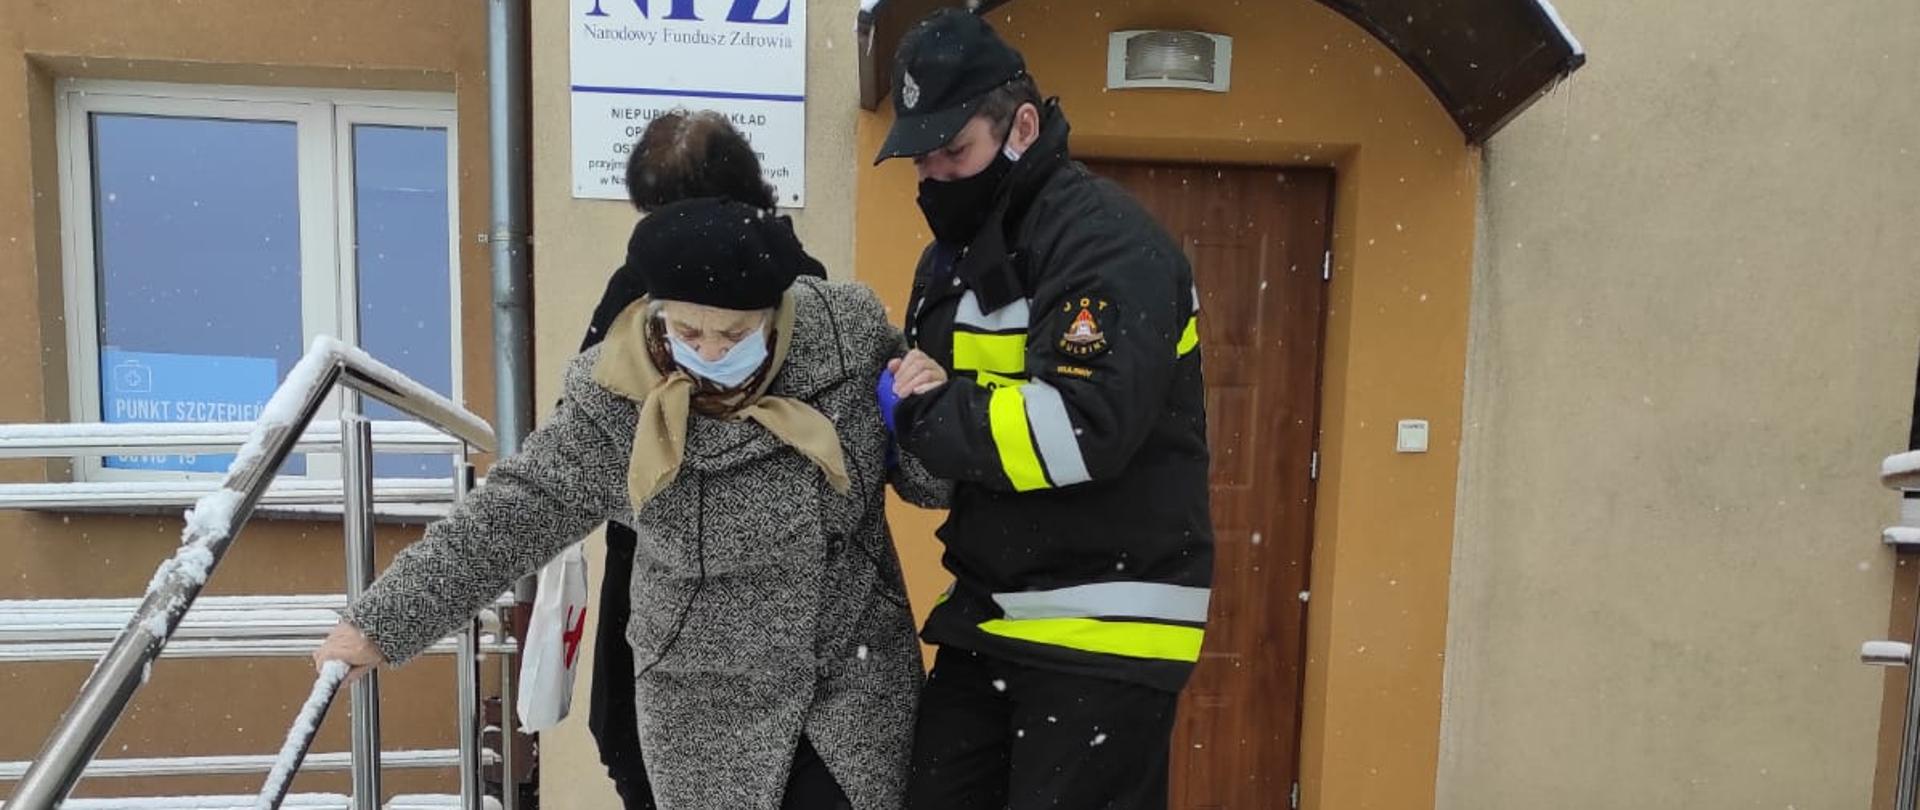 Zdjęcie przedstawia strażaka OSP, który trzyma pod ręką starszą kobietę i pomaga jej zejść ze schodów. W tle znajduje się budynek Niepublicznego Zakładu Opieki Zdrowotnej w Ostrowitem, gdzie znajduje się punkt szczepień. Kobieta oraz strażak mają założone maseczki chirurgiczne na twarzy. Na schodach i poza nimi widać leżący dookoła śnieg. 